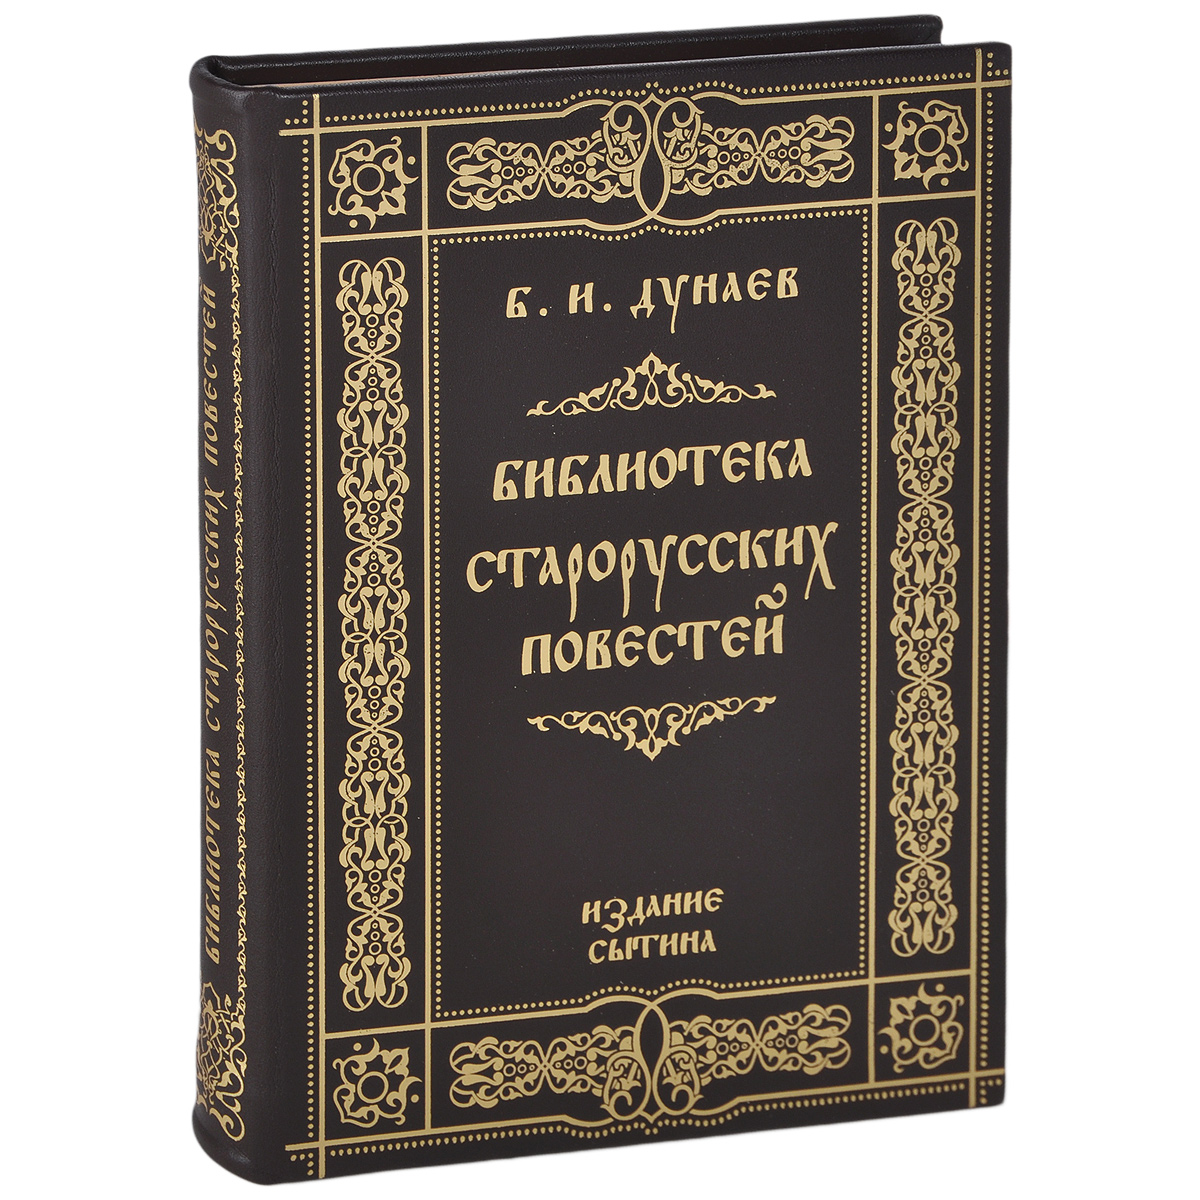 Библиотека старорусских повестей (подарочное издание)